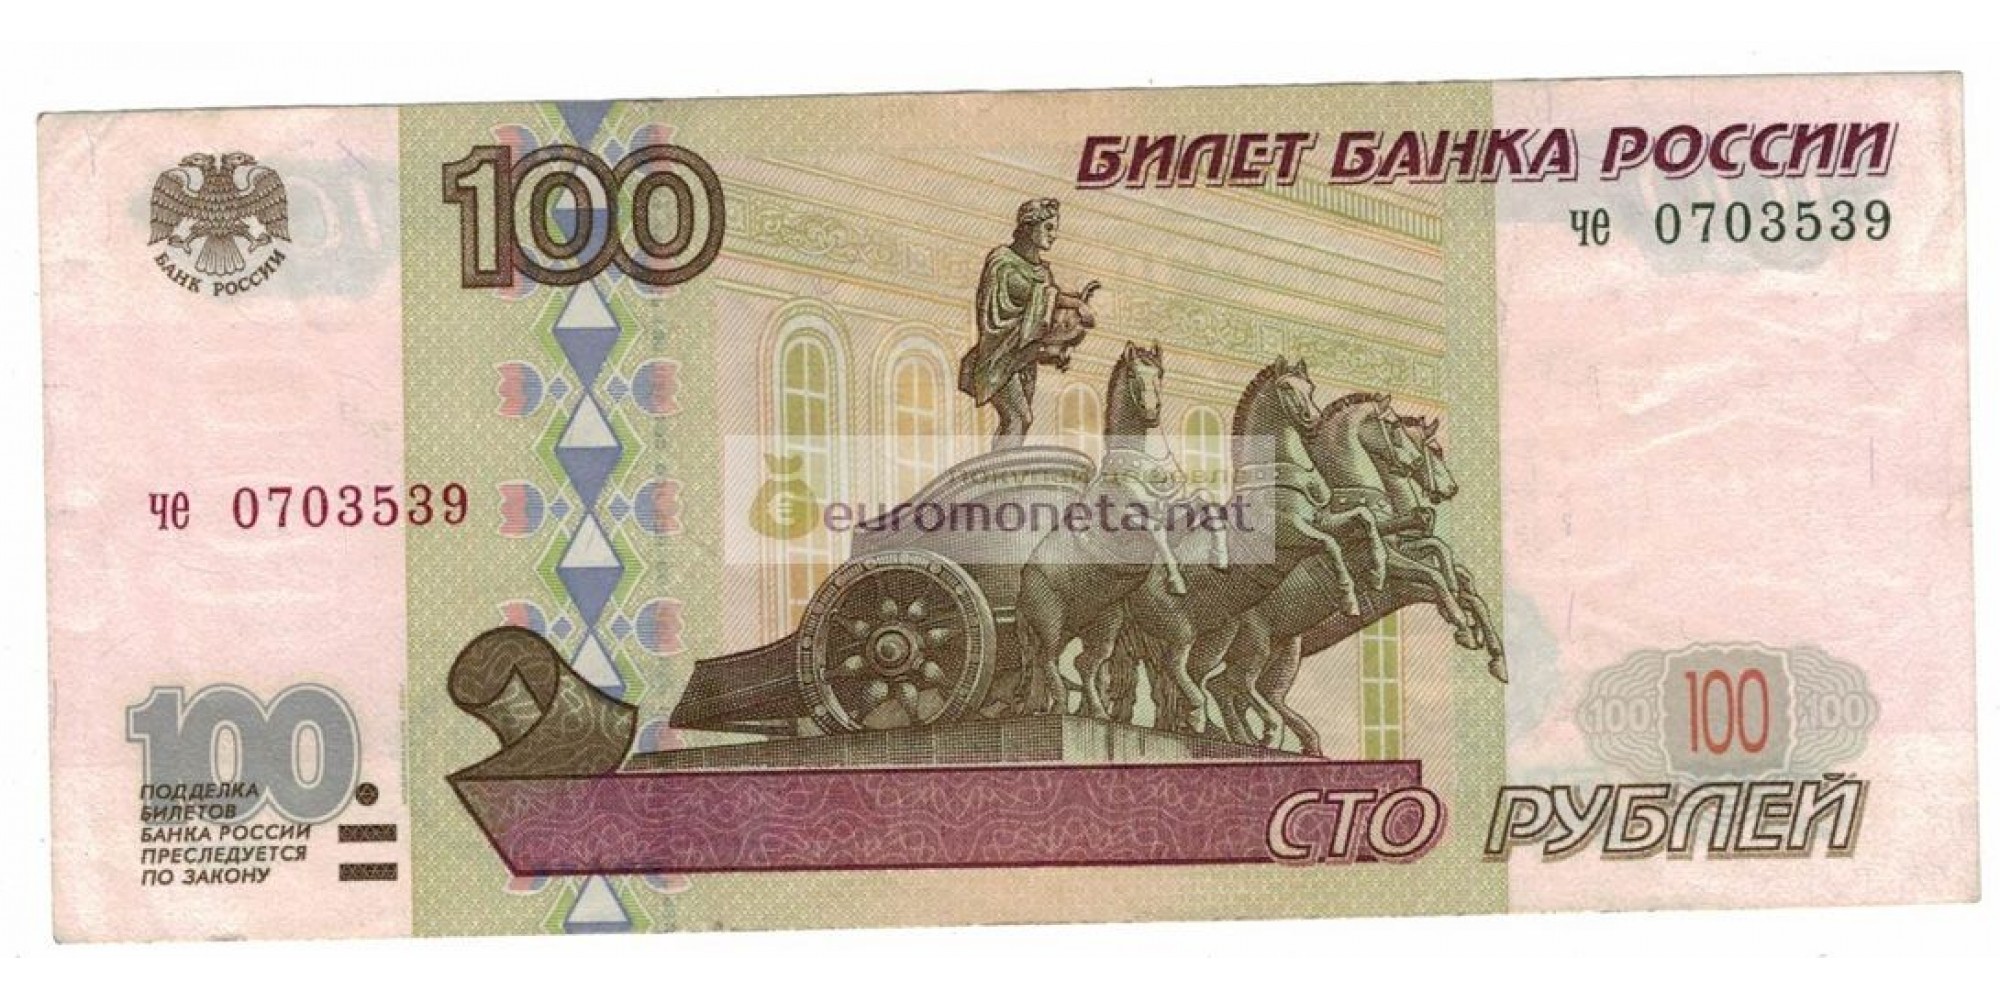 Россия 100 рублей 1997 год модификация 2001 год серия че 0703539